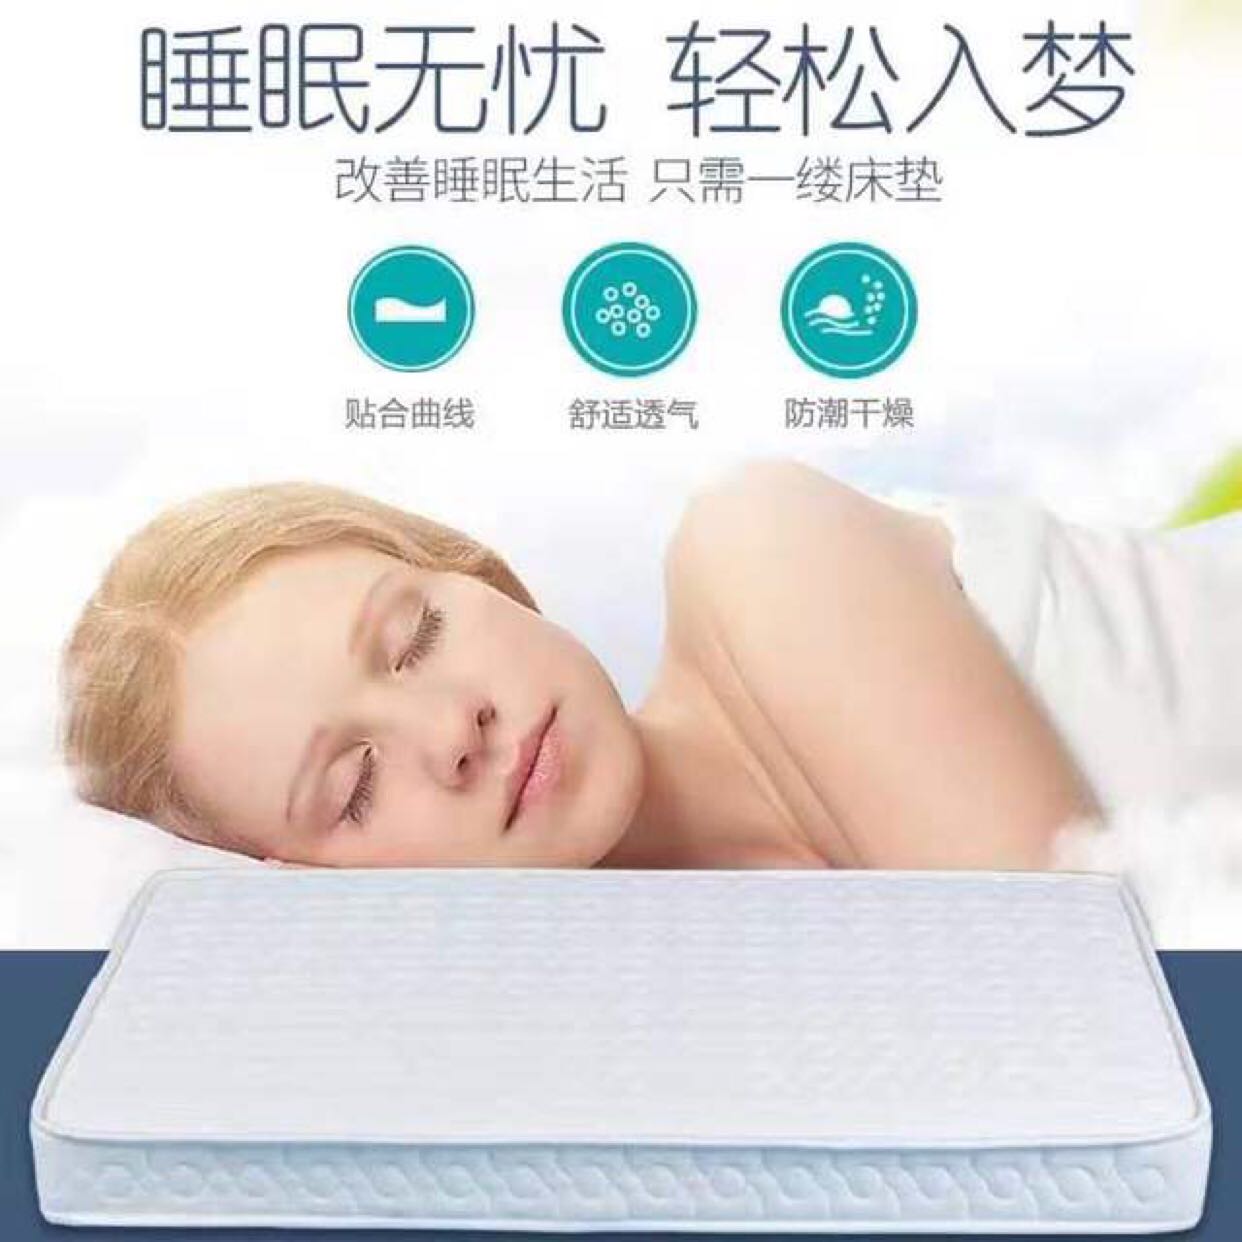 泽贝儿婴儿床专用床垫邦尼尔独立弹簧环保透气加厚设计可定制尺寸